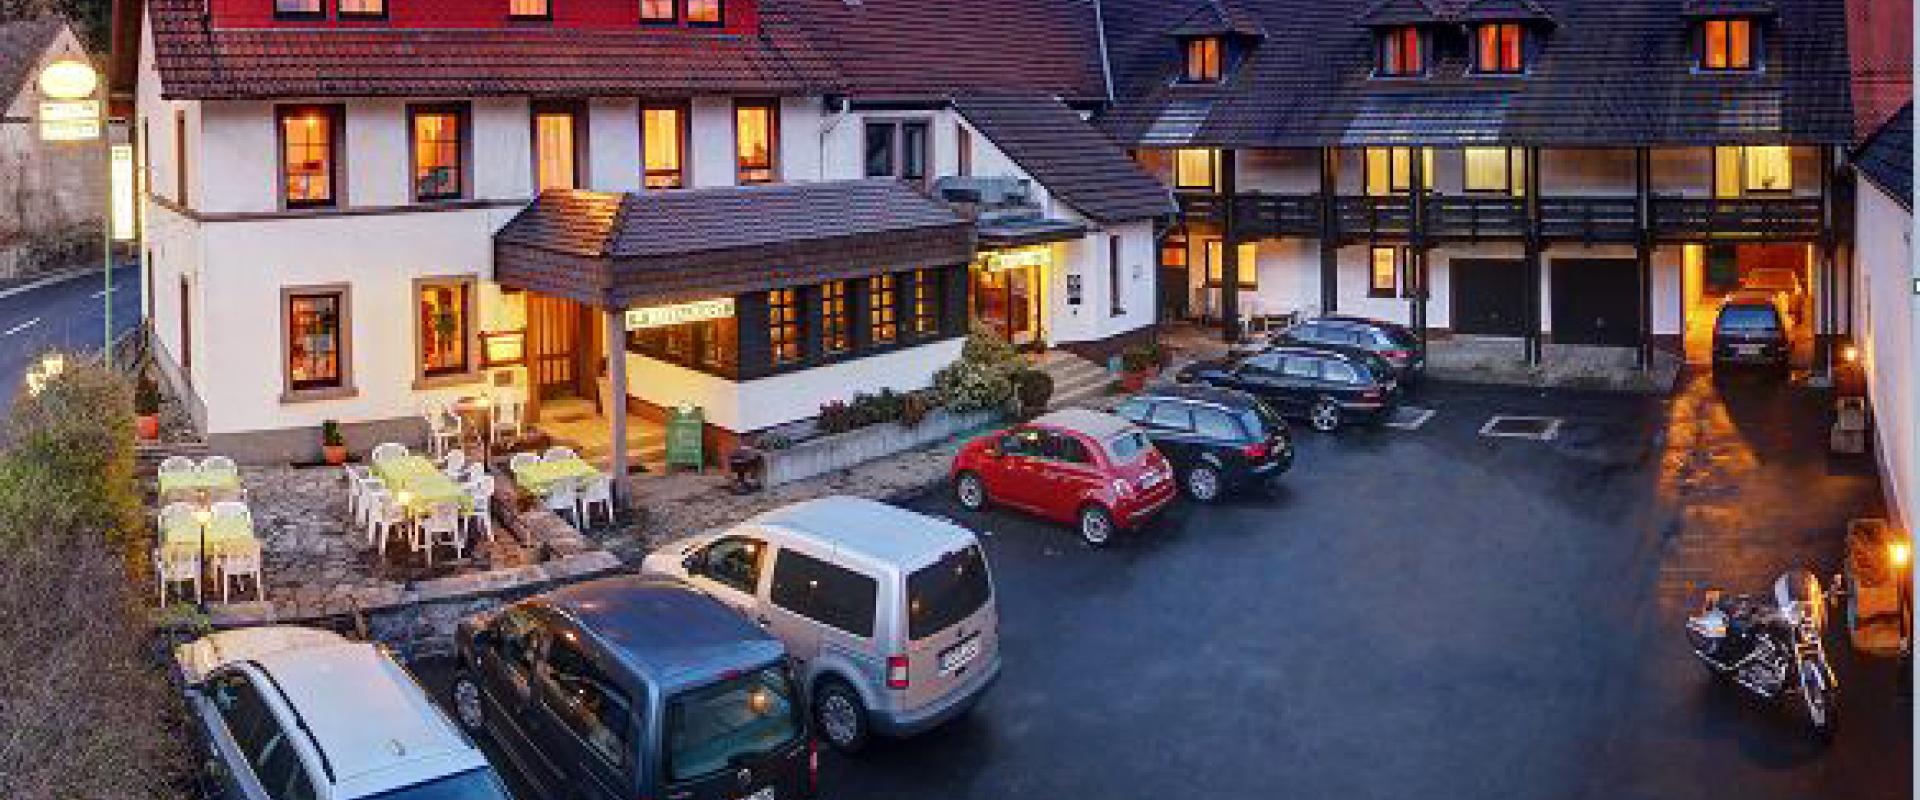 12693 Motorrad Hotel Reckweilerhof in der Pfalz.jpg